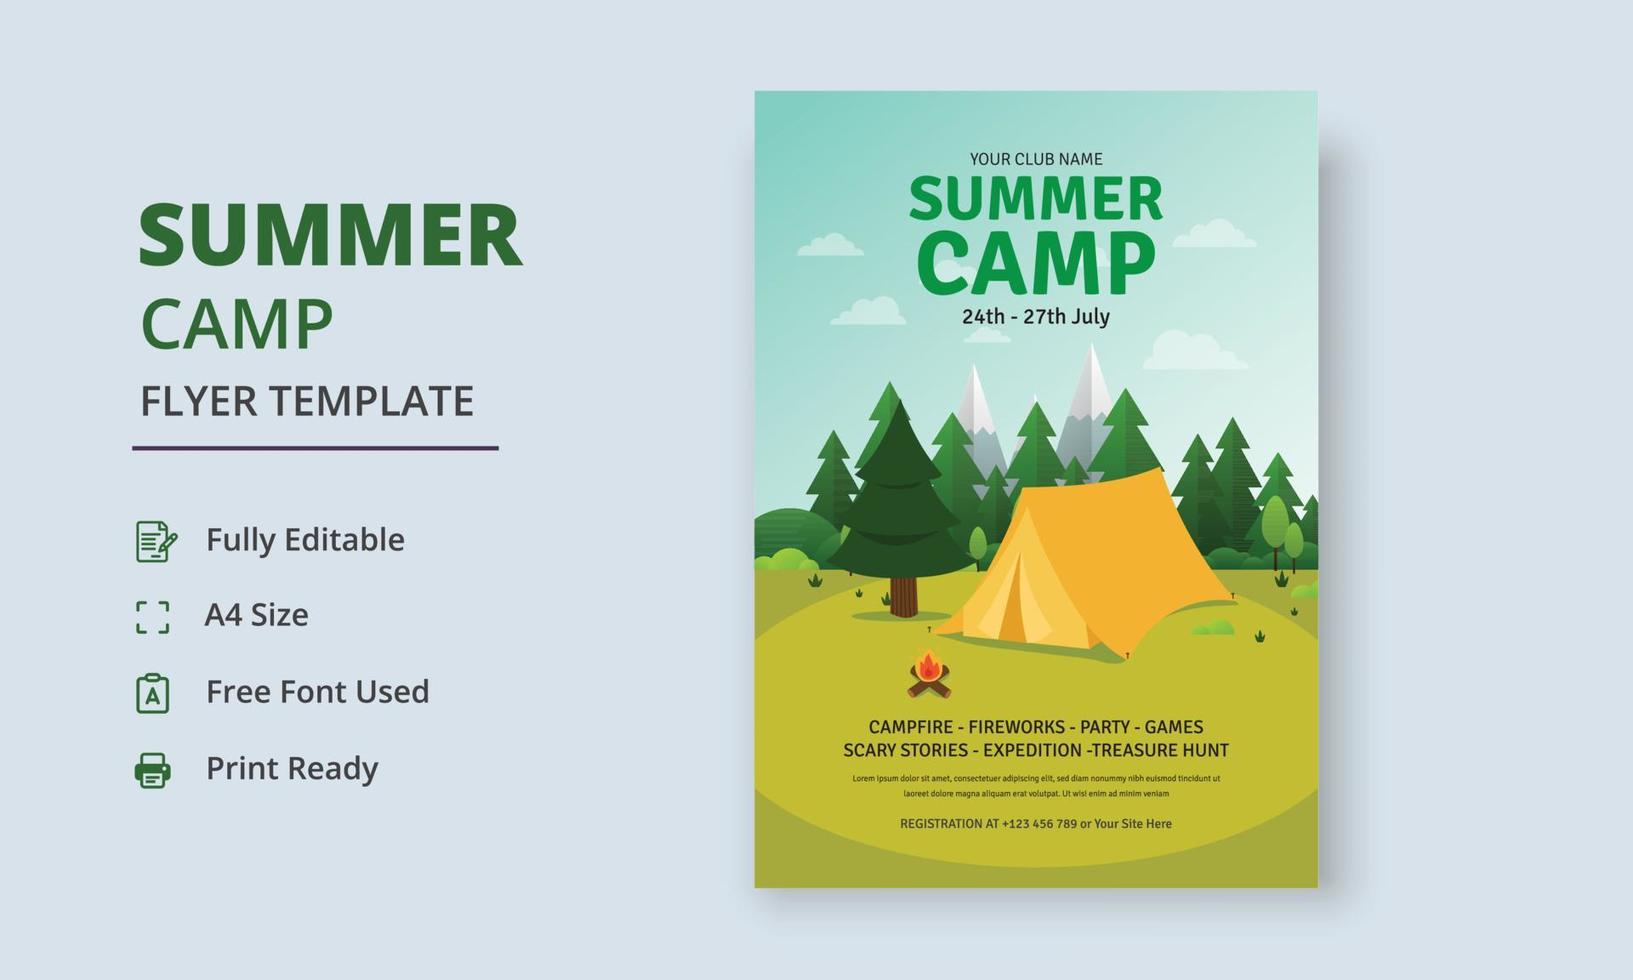 Summer Camp Flyer Template, Kids Summer Camp Flyer Template, Scouts Summer Camp Flyer Template vector